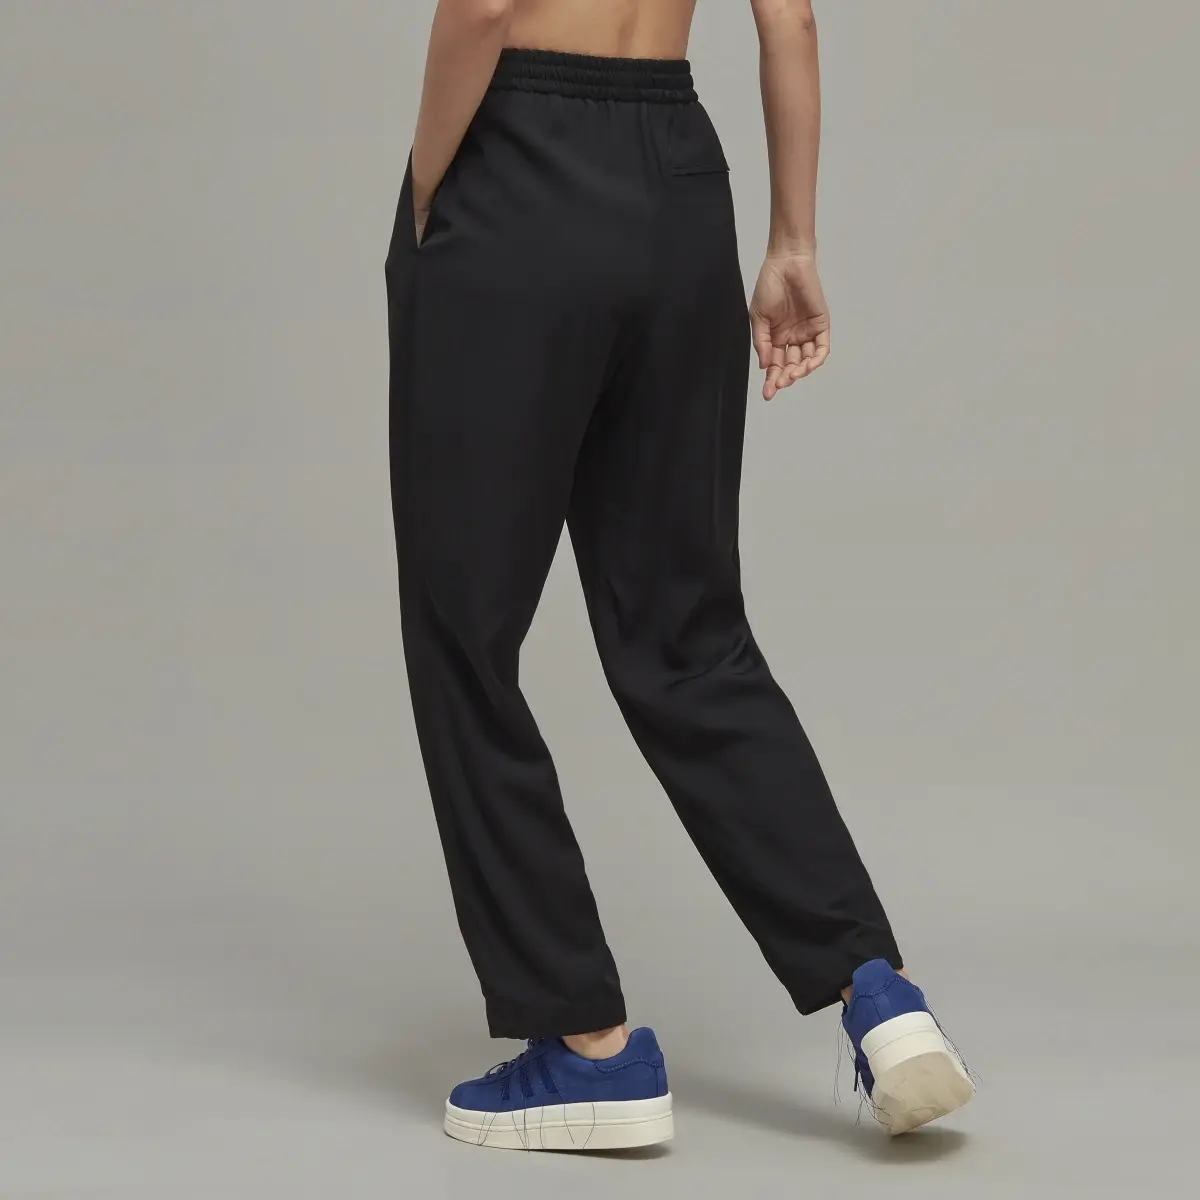 Adidas Y-3 Elegant Cuffed Pants. 3